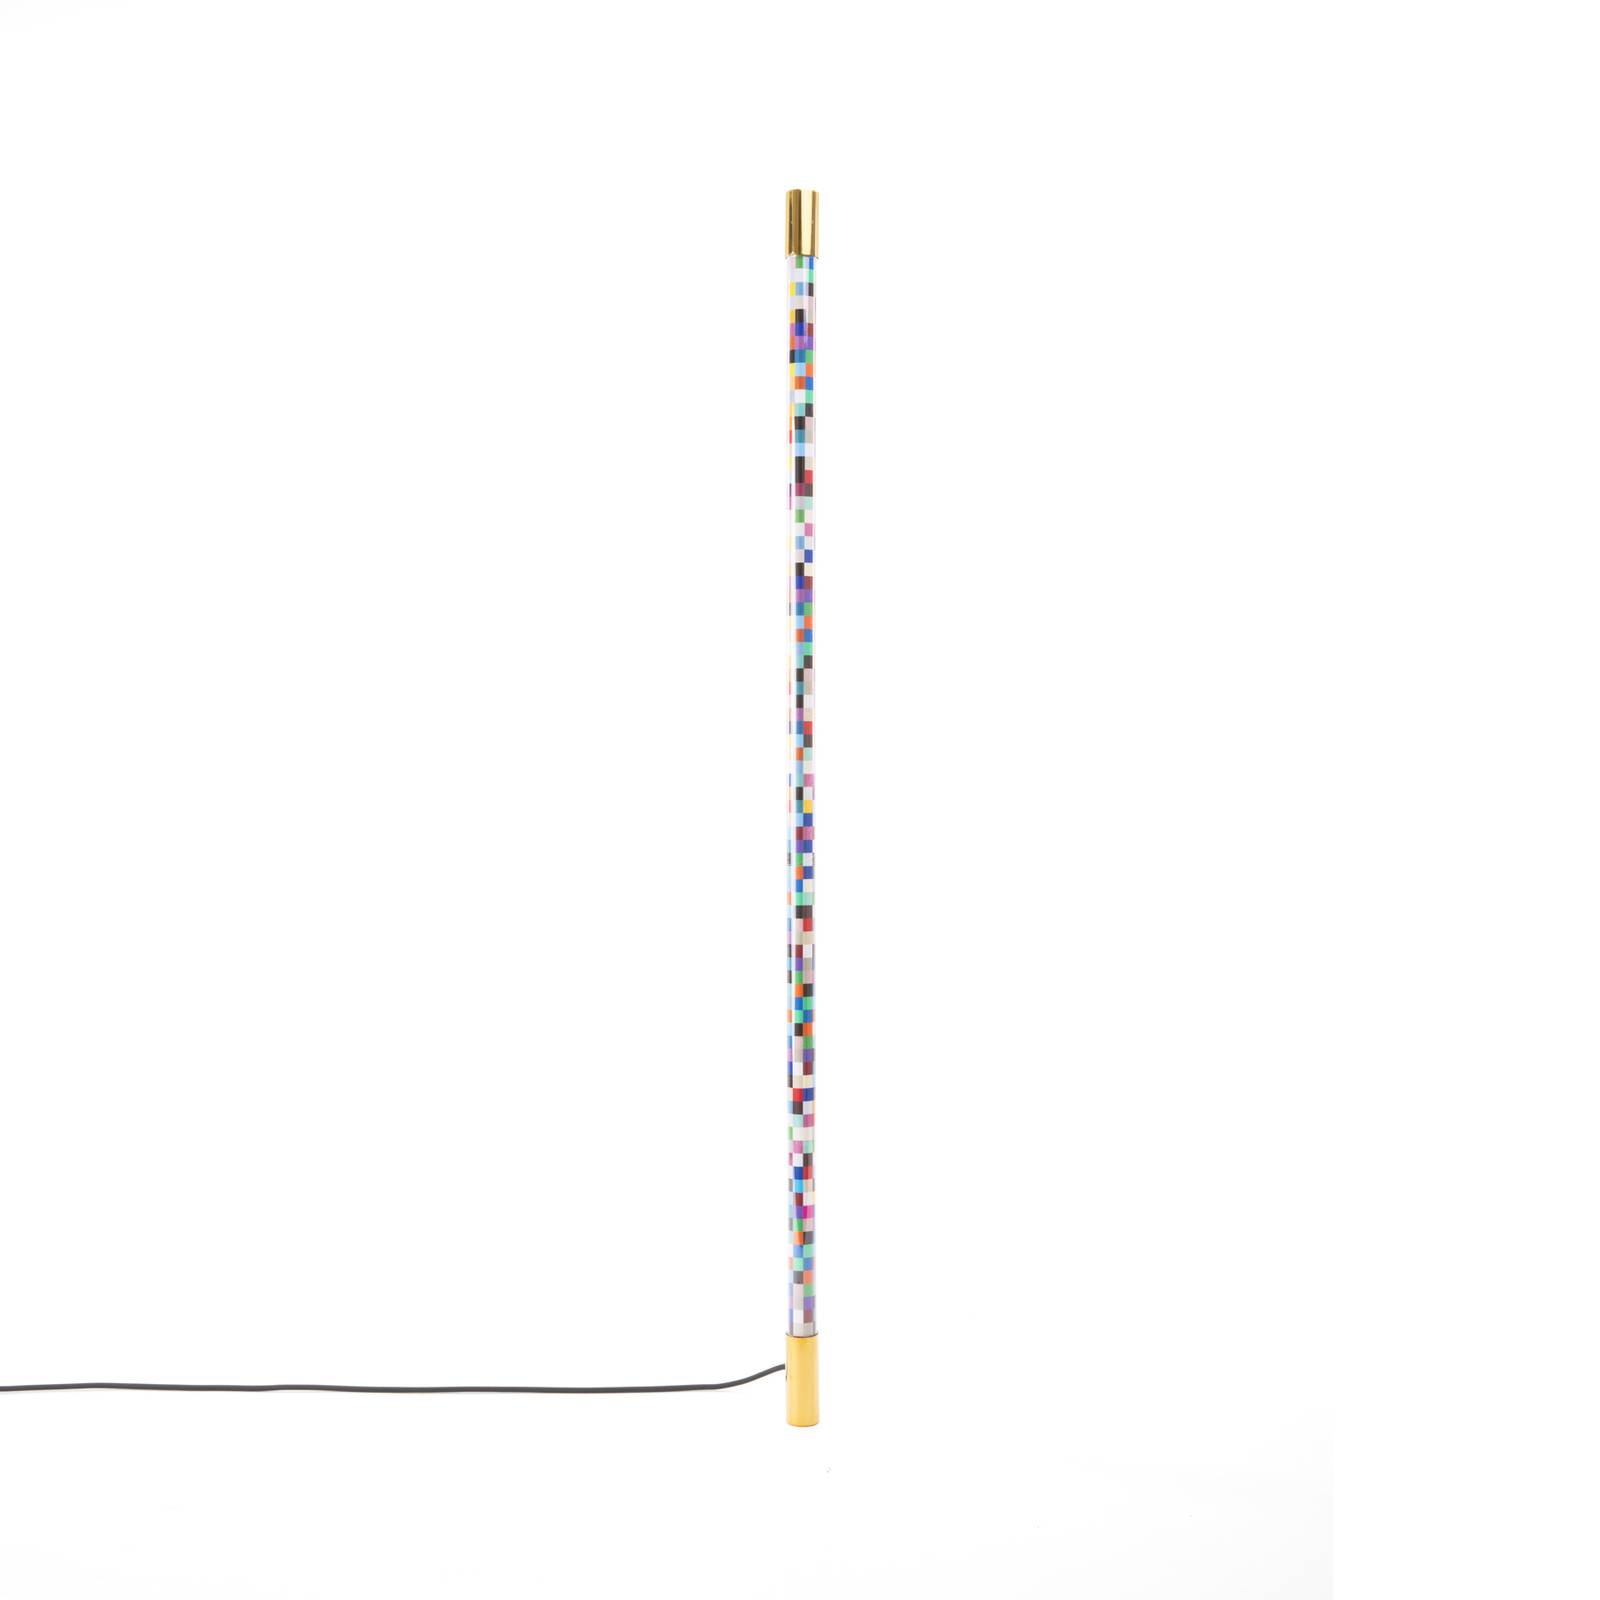 SELETTI Linea Pixled LED-Wandlampe, multicolour